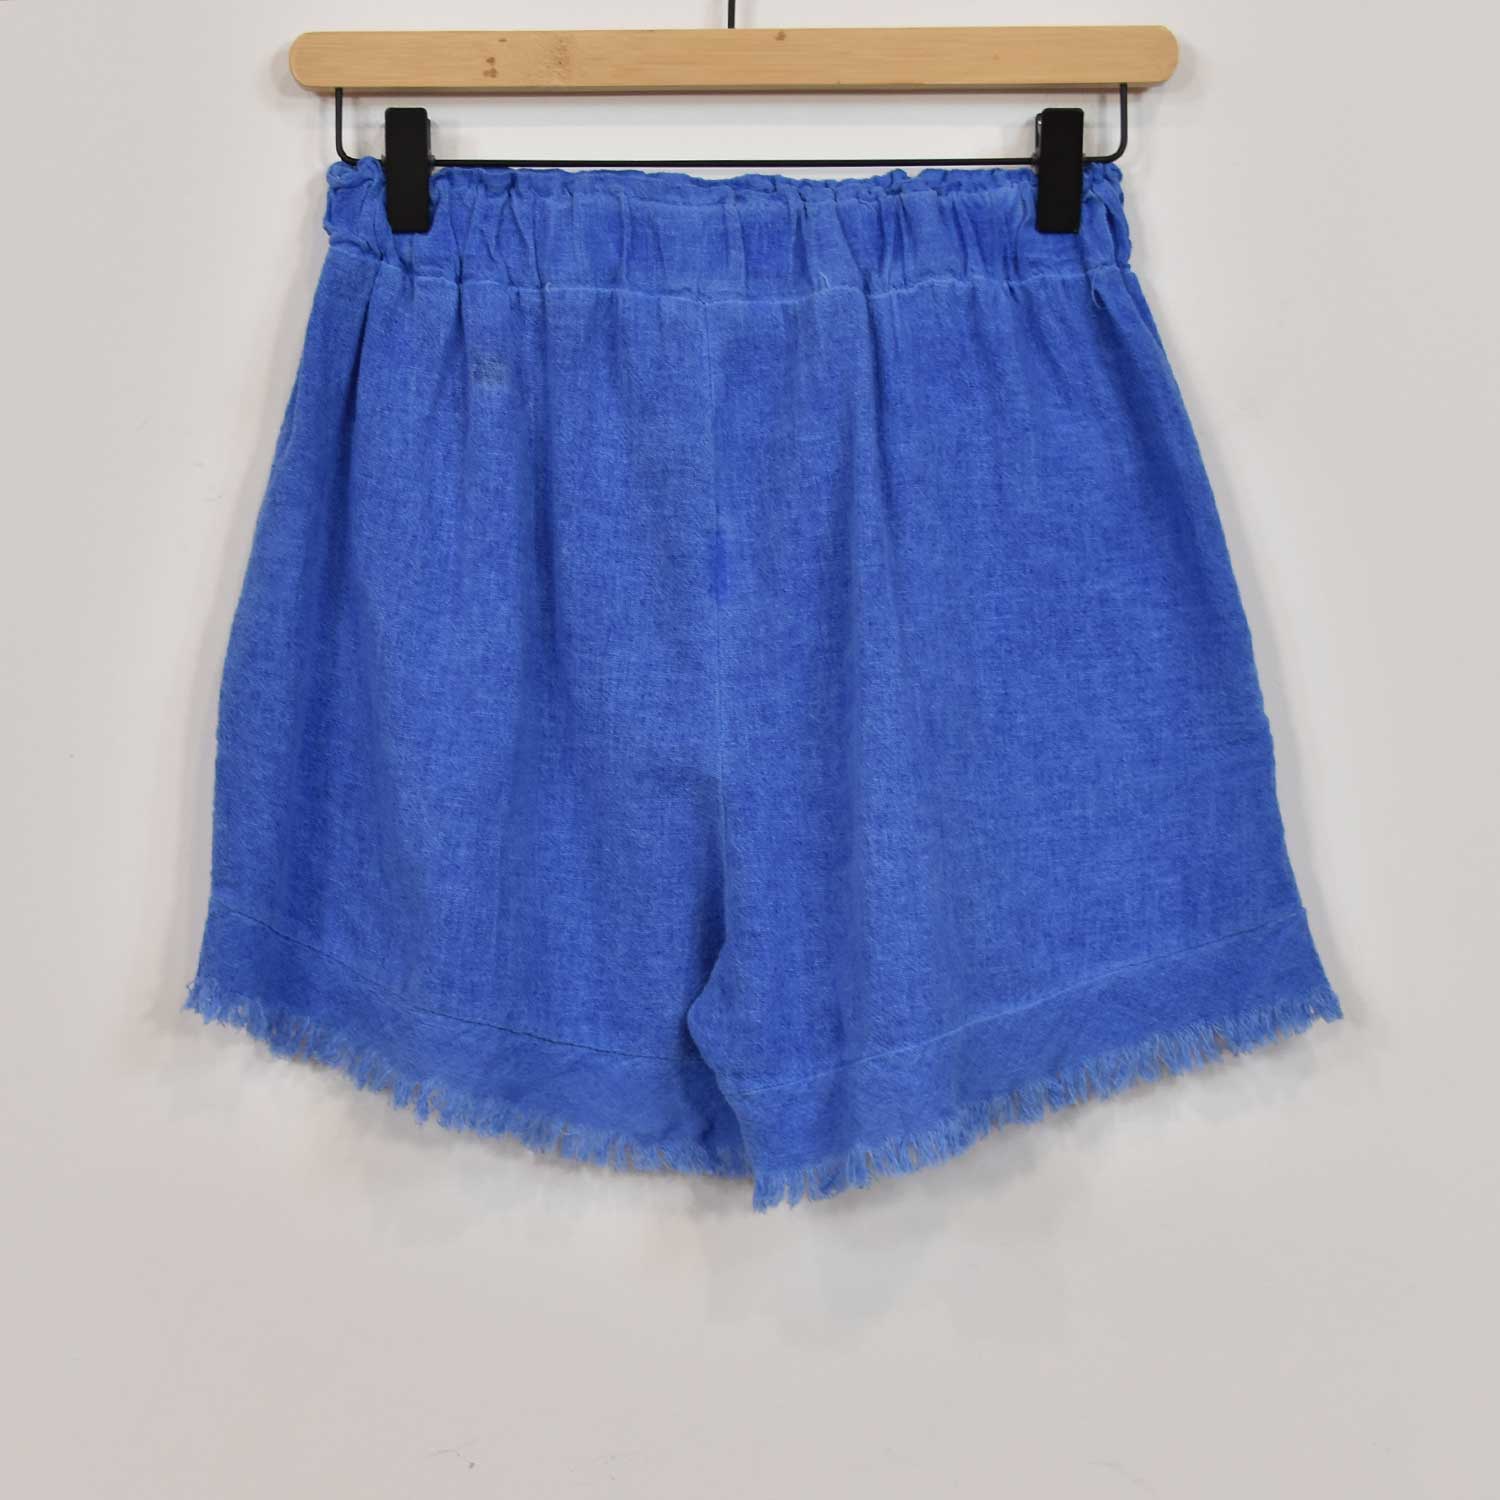 Blue frayed shorts